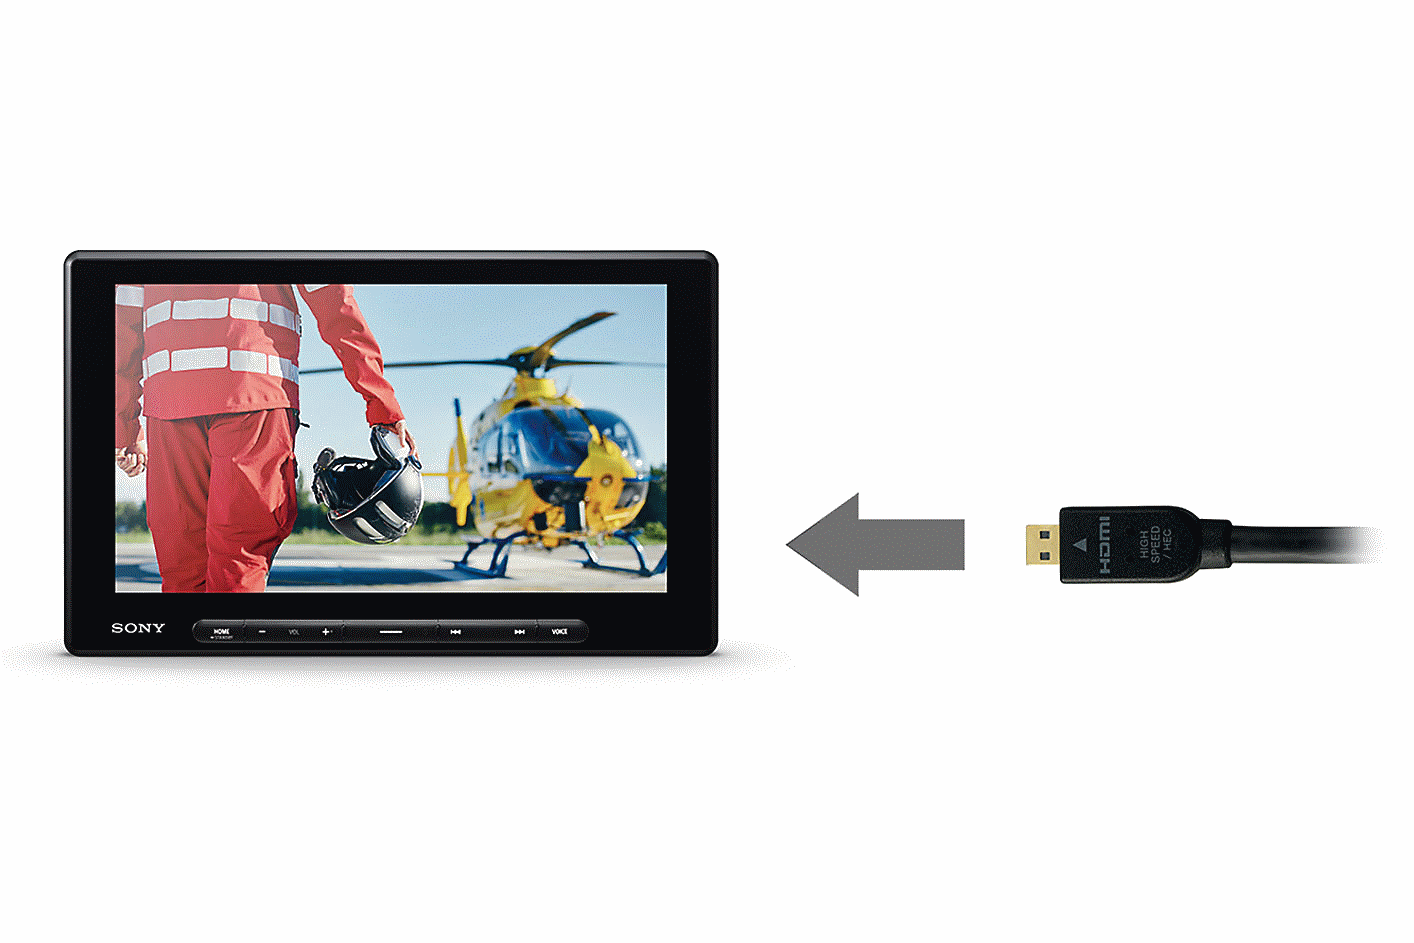 Imagen de un cable HDMI con una flecha apuntando hacia el XAV-AX8500